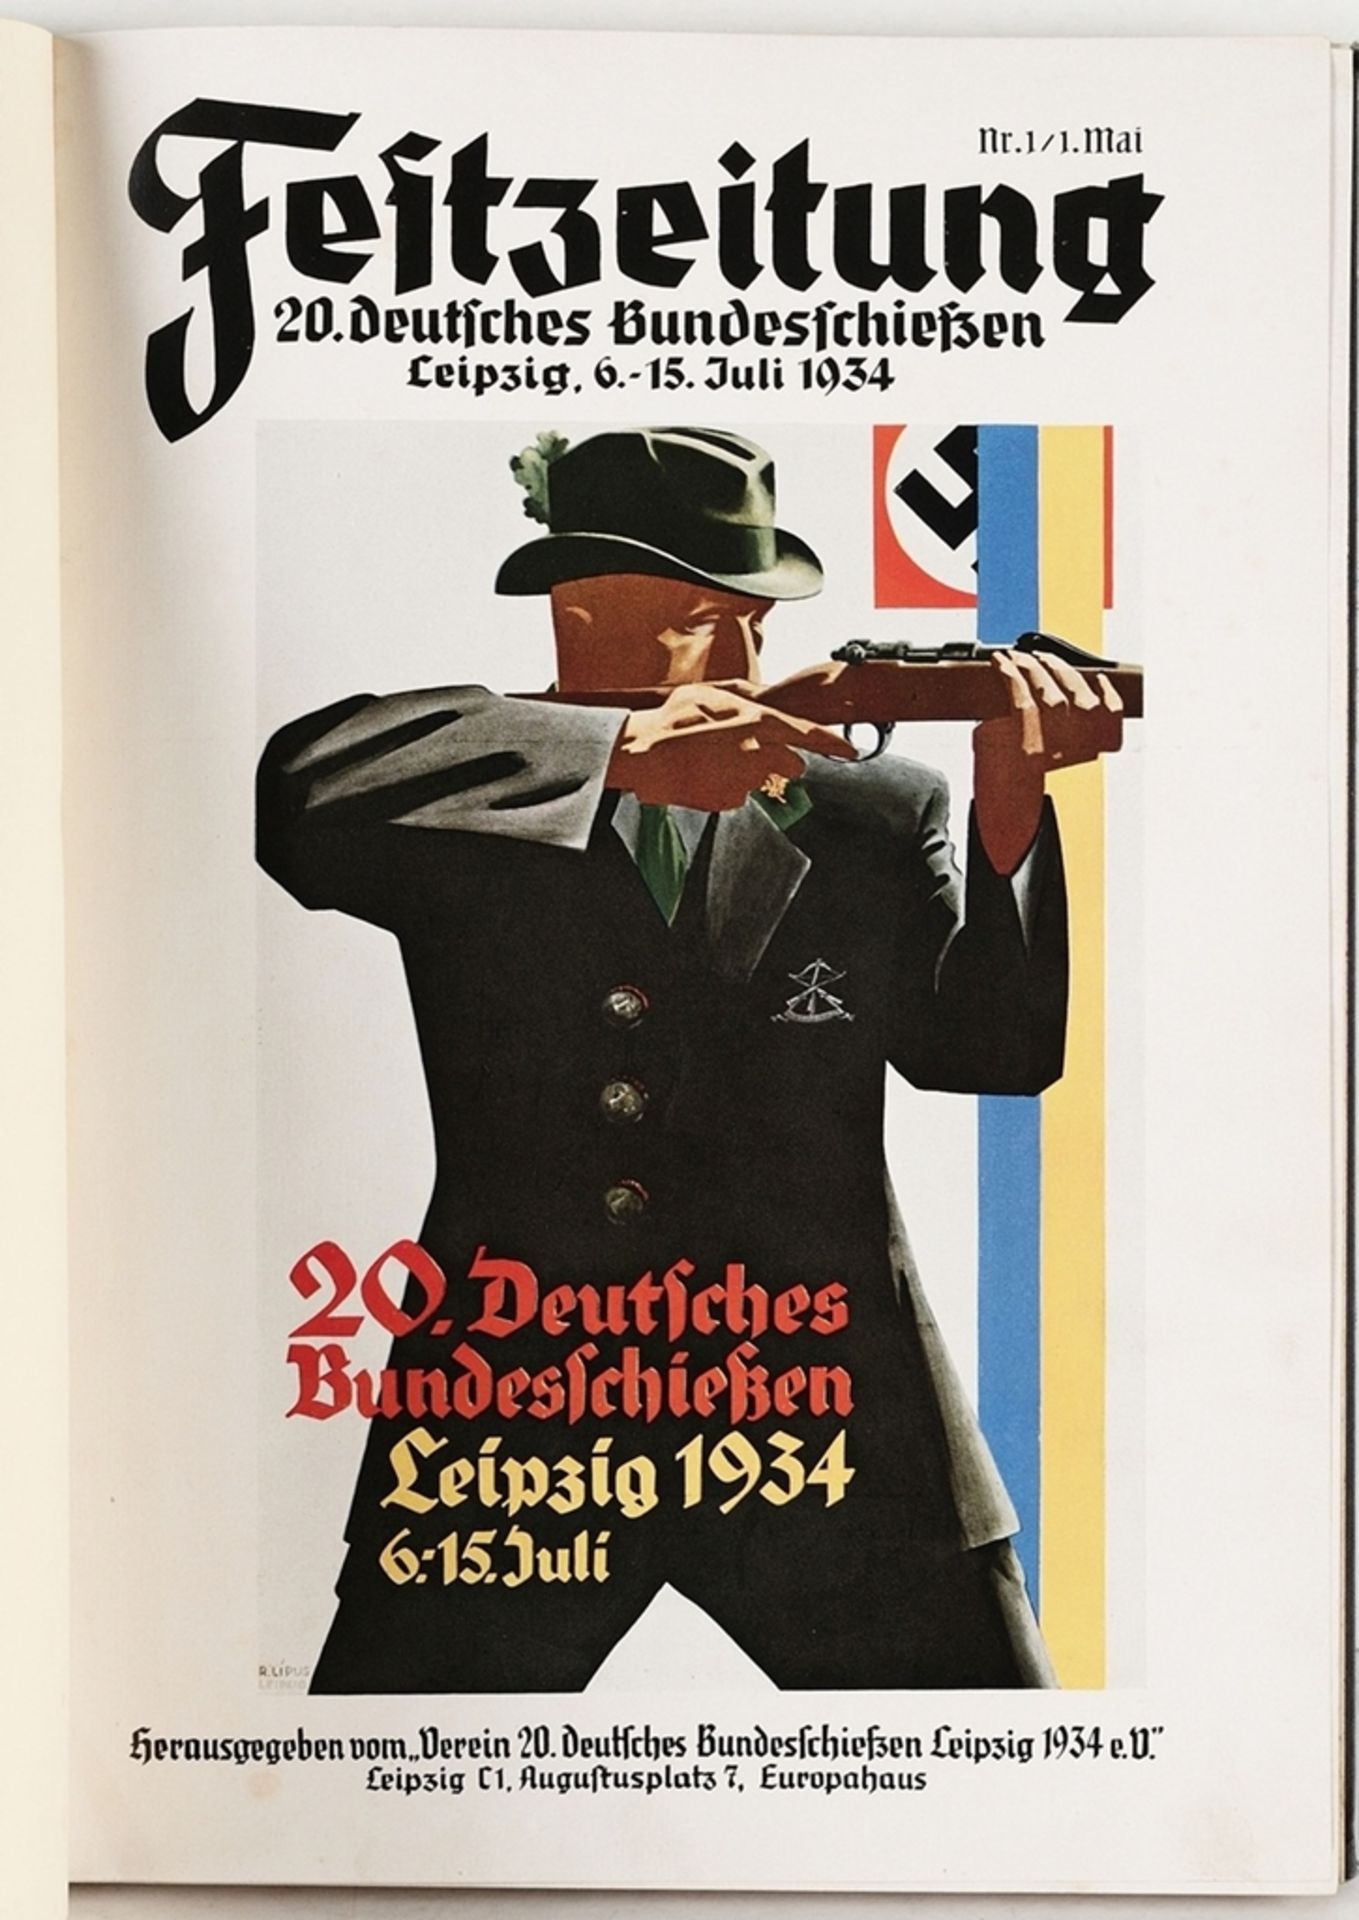 Festzeitung 20. Deutsches Bundesschießen